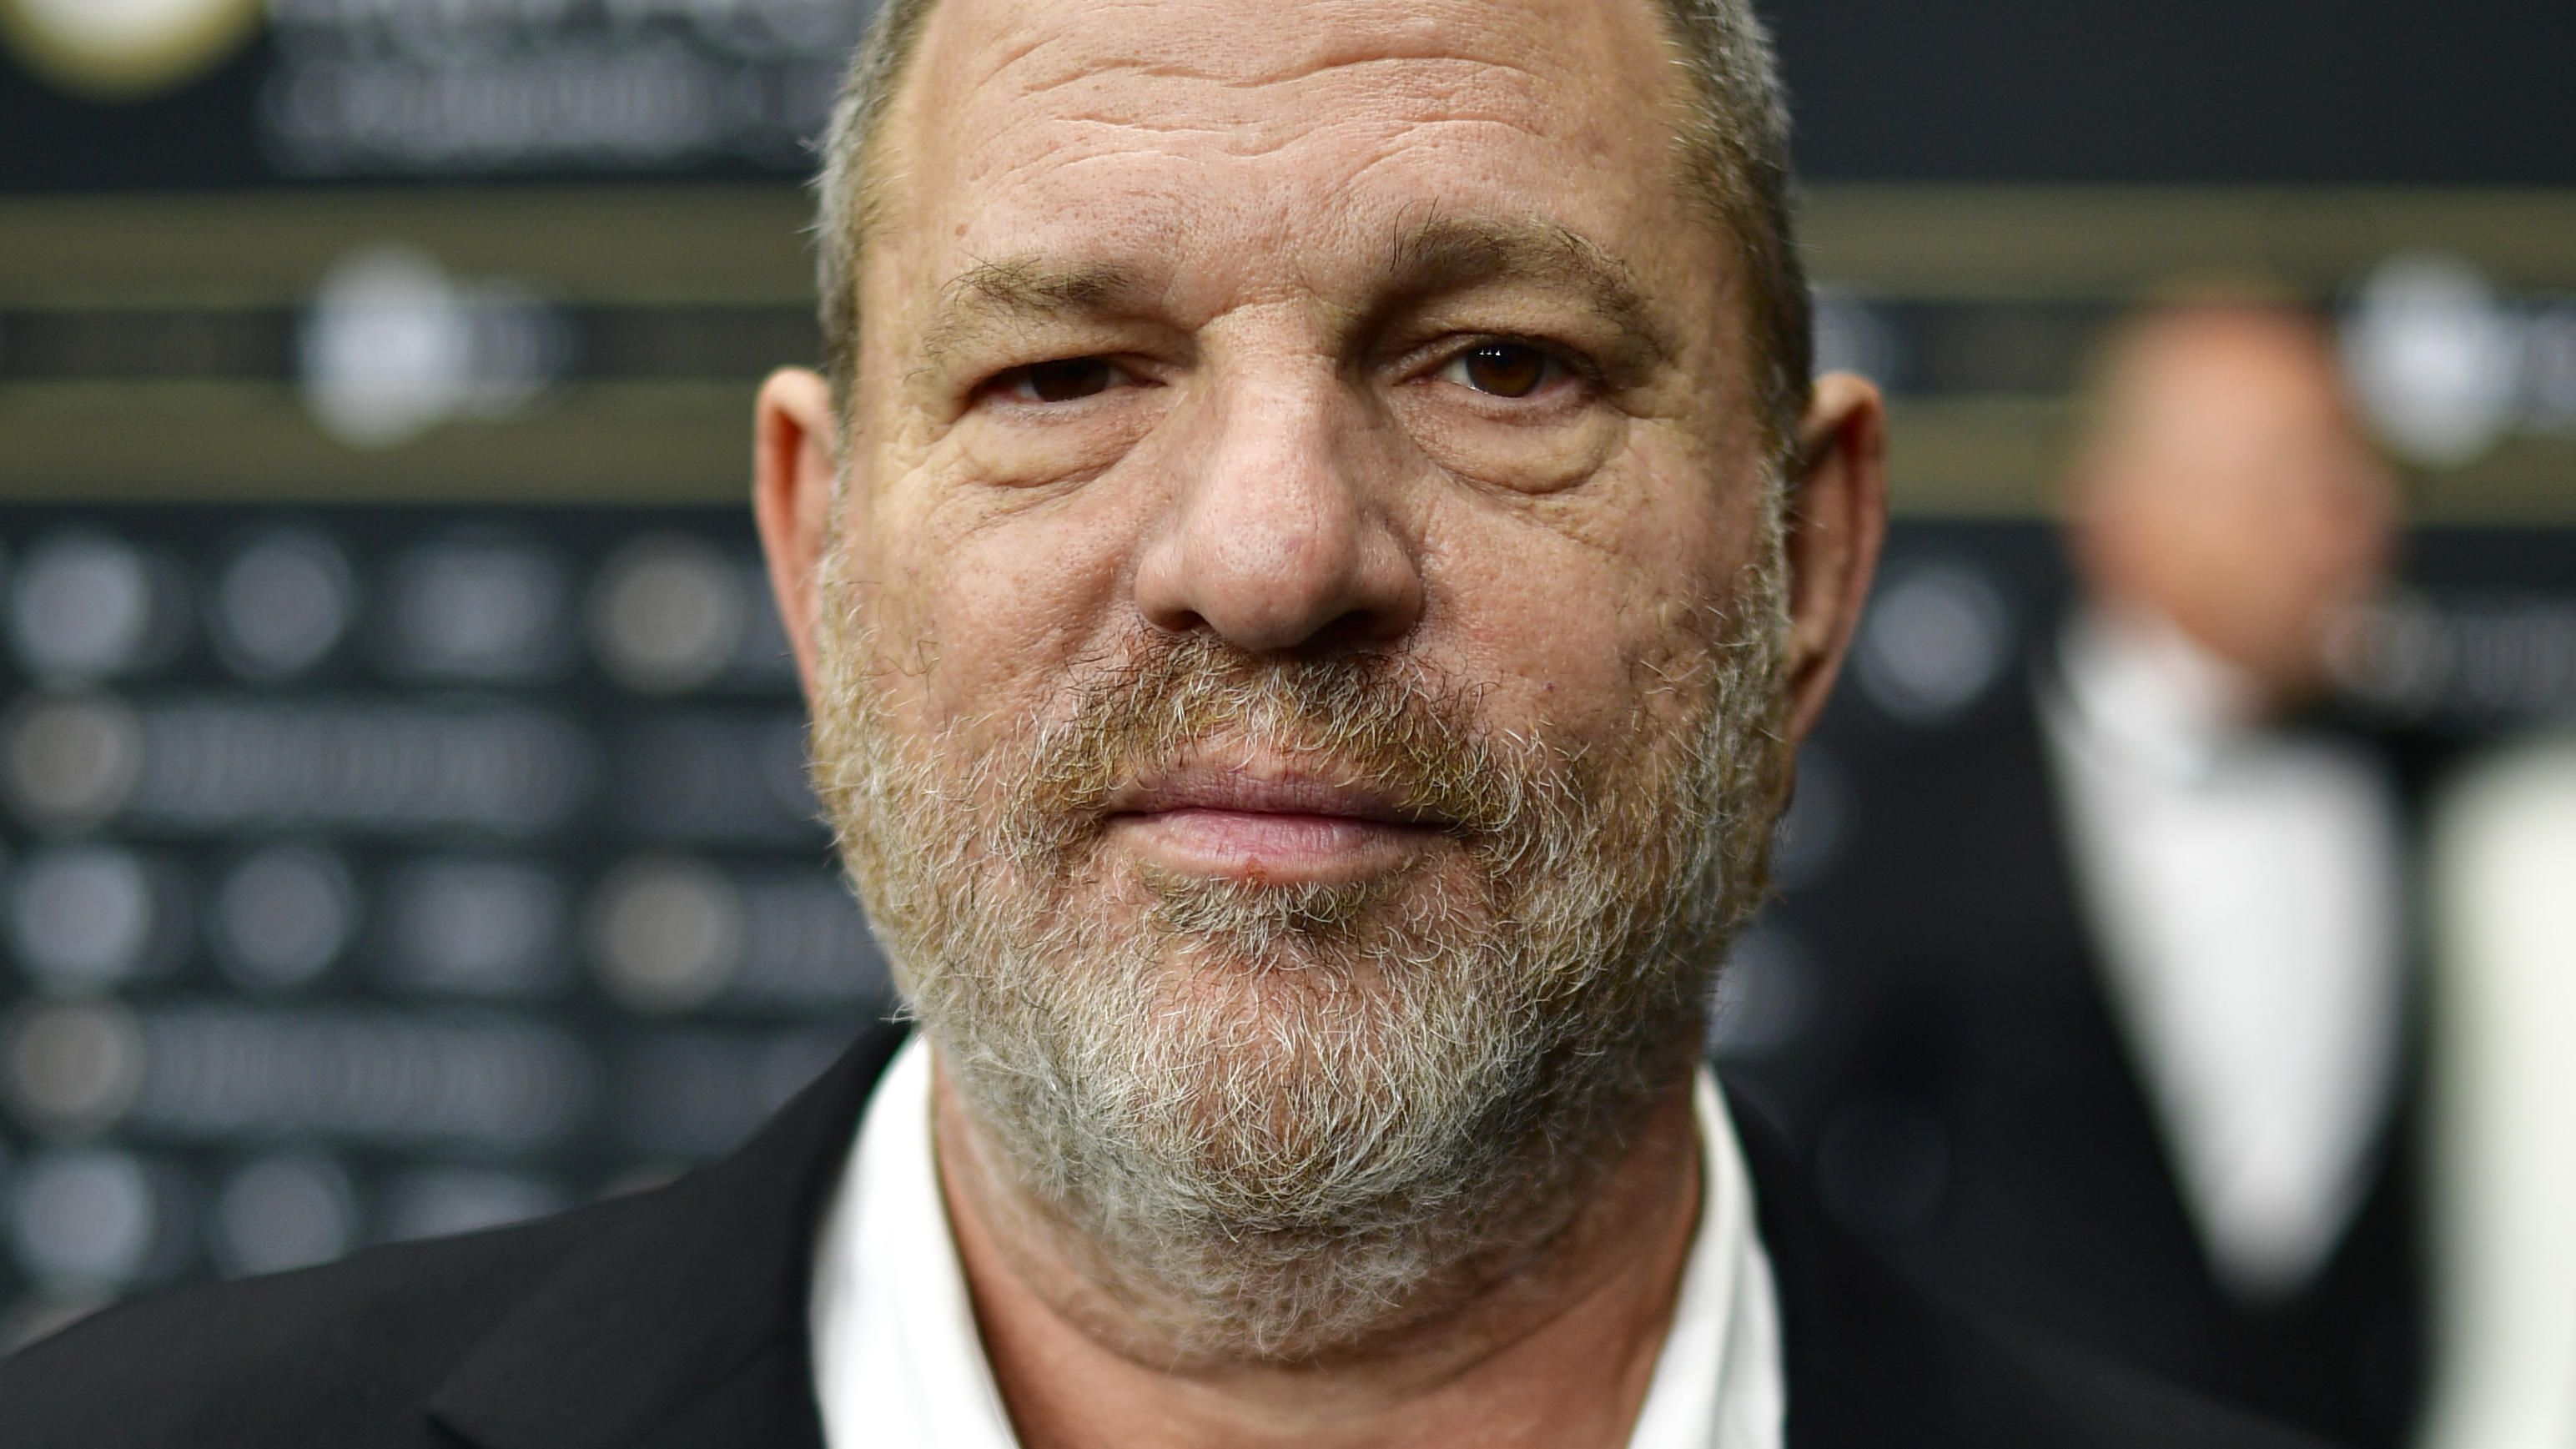 Harvey Weinstein: Hier begrapscht und bedrängt er eine Frau Video zeigt sexuelle Belästigung